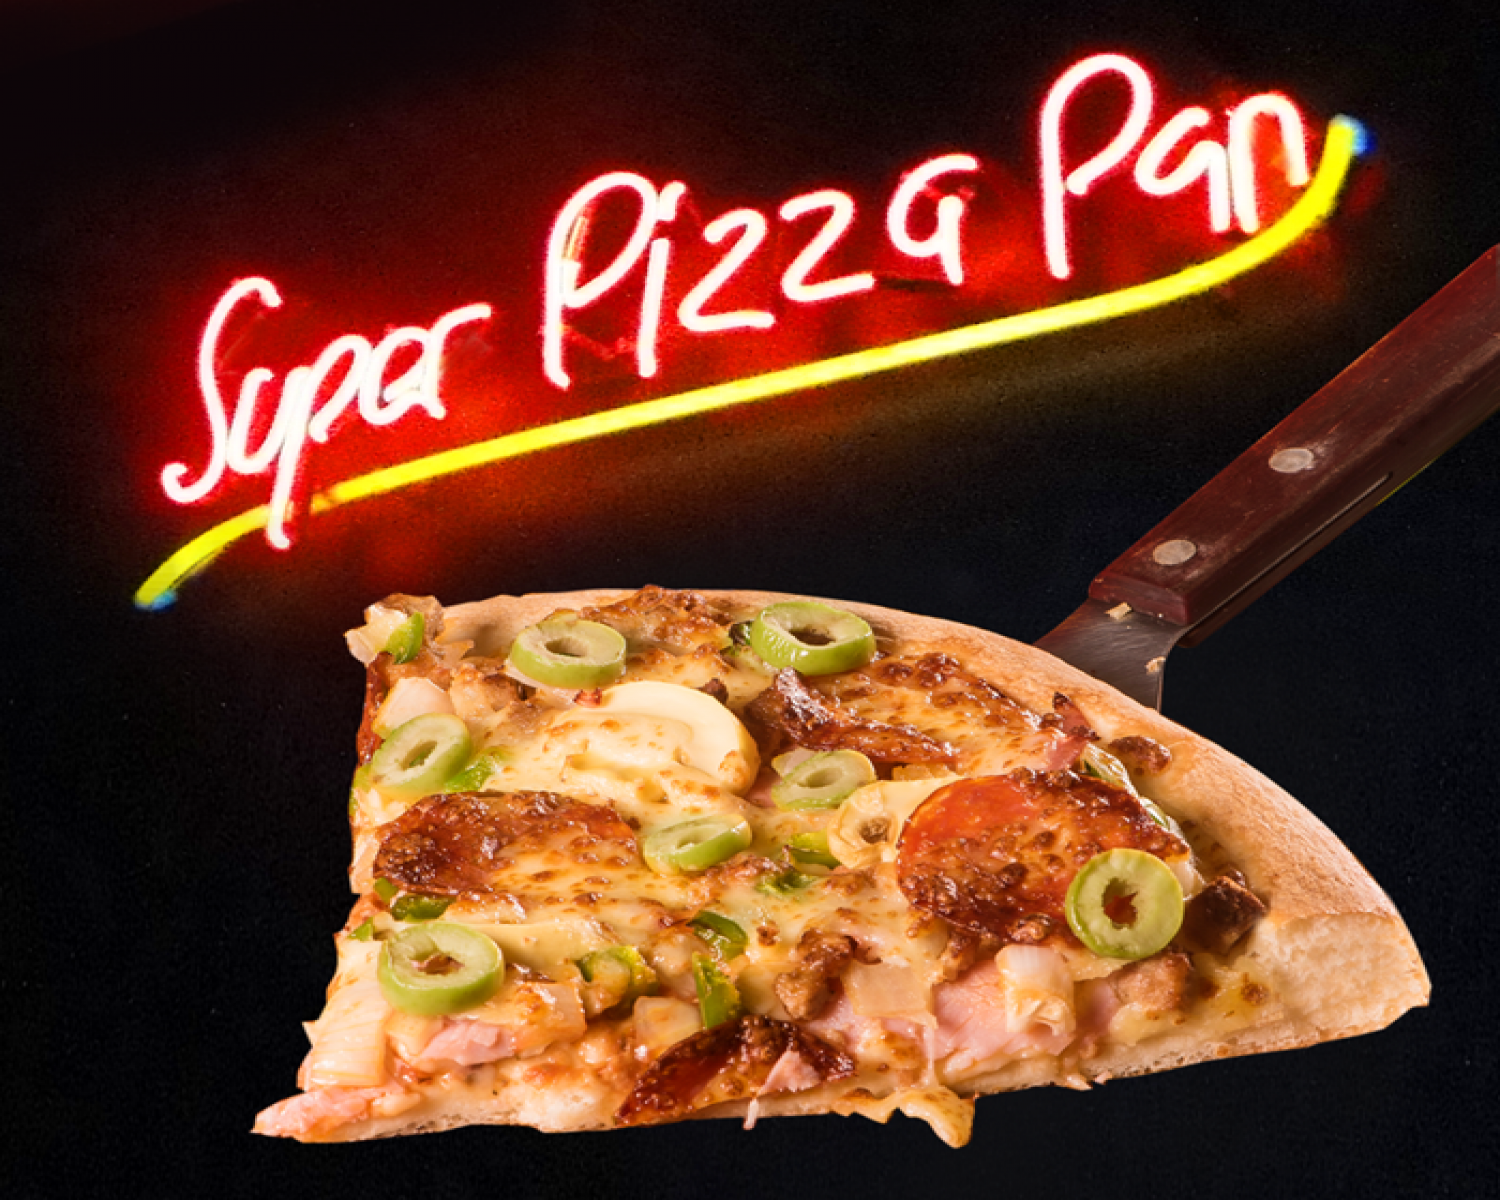 Comercial Super Pizza Pan Sorocaba 